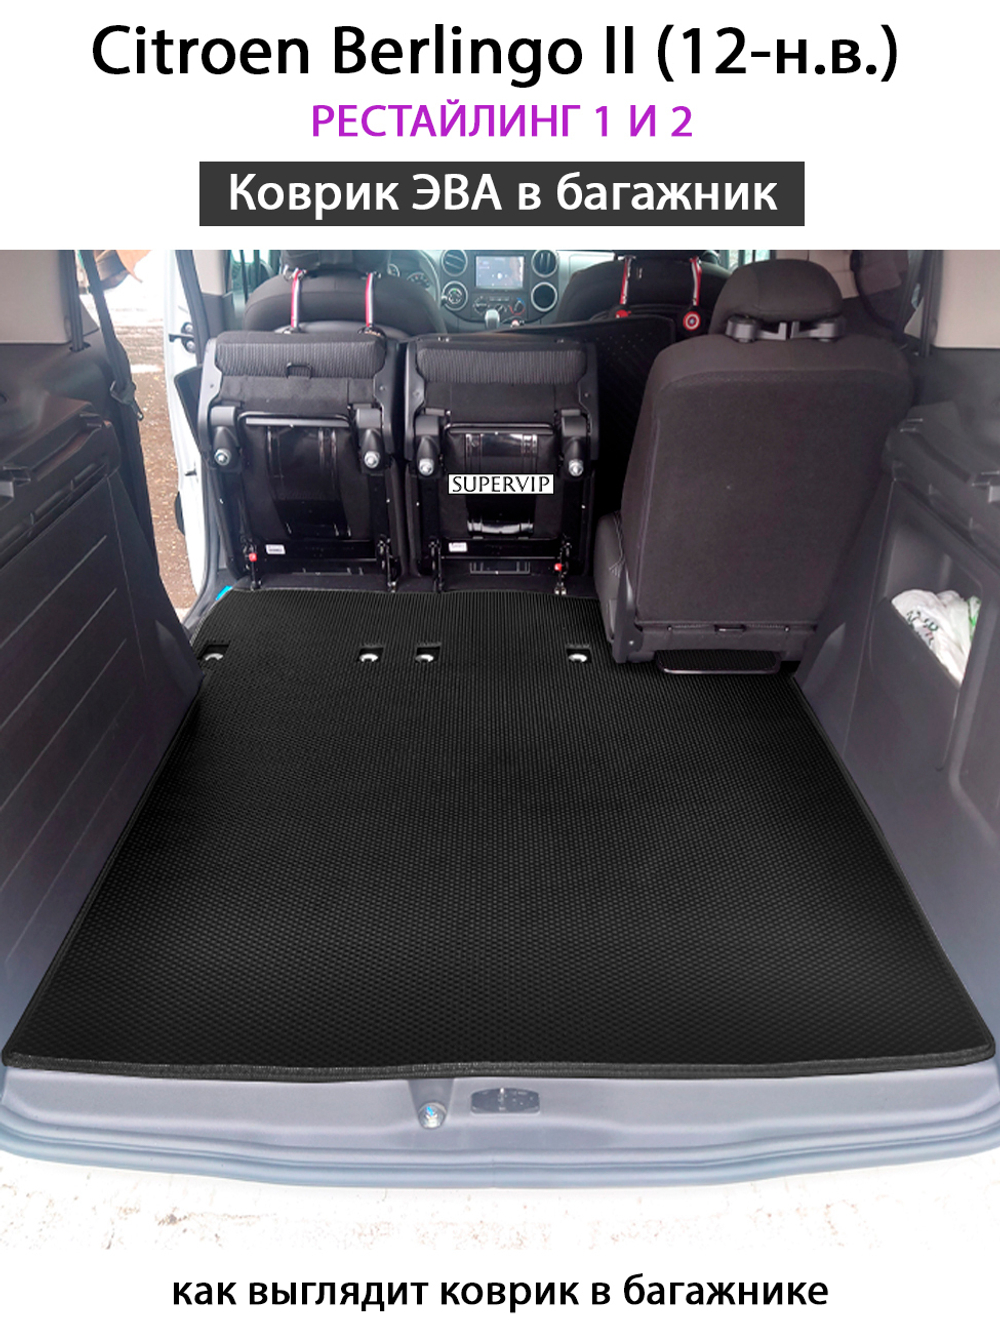 коврик eva в багажник в салон авто для citroen berlingo II 12-н.в. от supervip